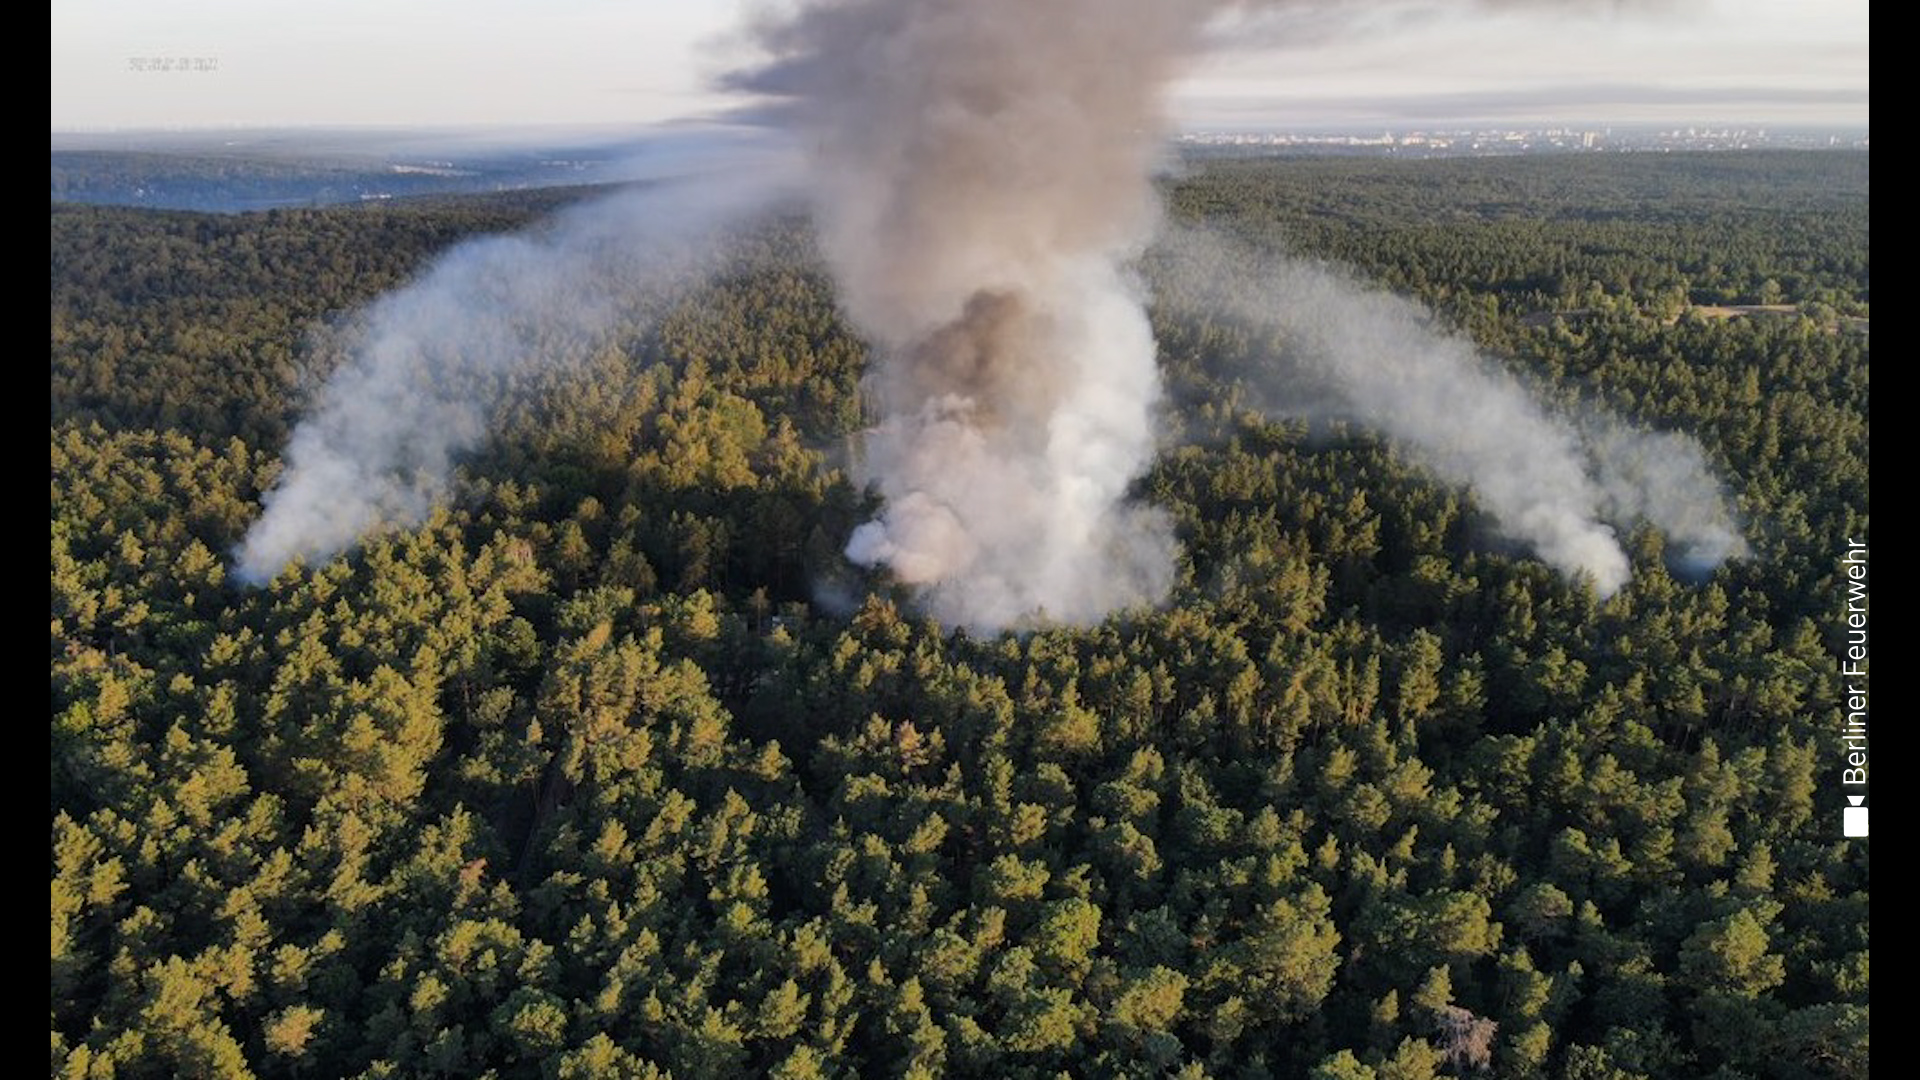 FOTO in VIDEO: V Berlinu se je vnelo skladišče streliva, gori 50 hektarjev gozda